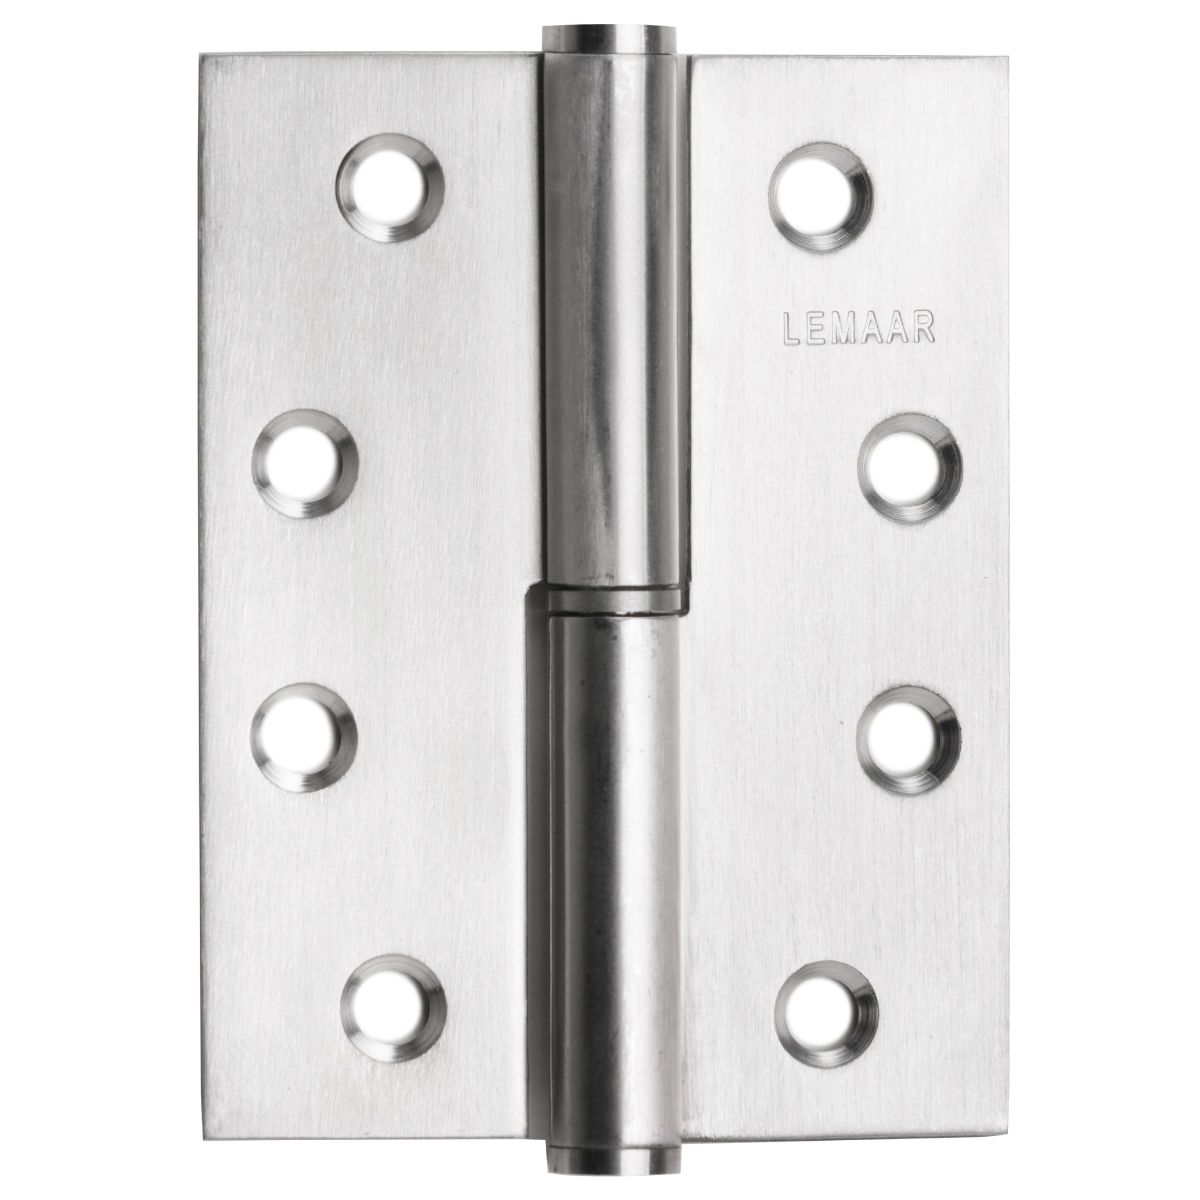 Lemaar 100 x 75 x 2.5mm Right Hand Lift Off Flat Tip Hinge satin stainless steel door hardware